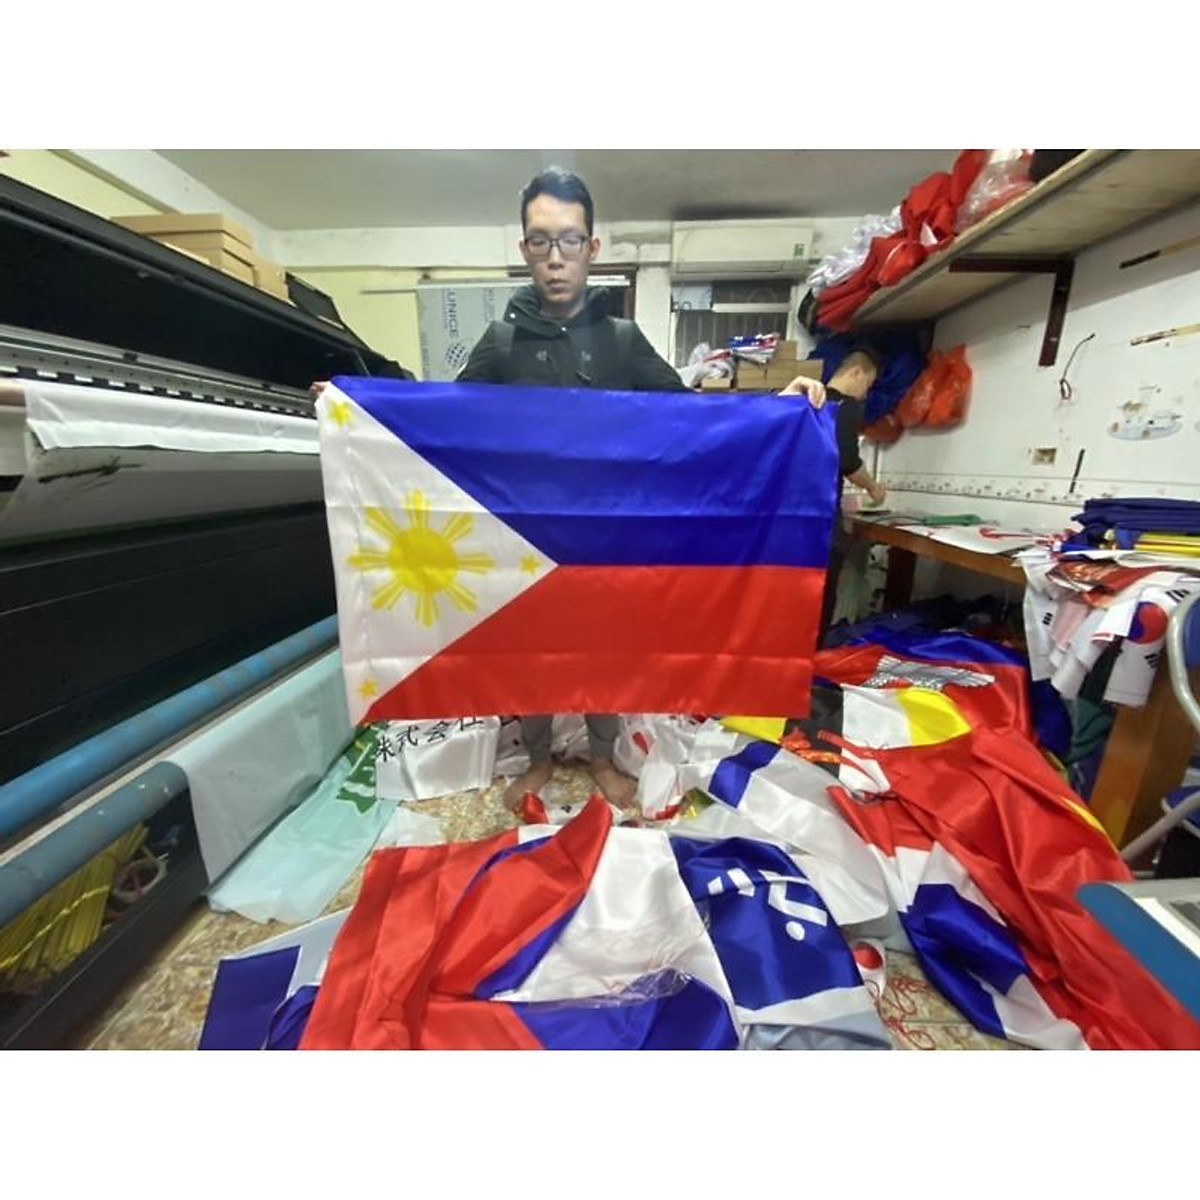 Cờ Philippines 3D: Hãy trải nghiệm sự sống động của cờ Philippines 3D, khi chiếc cờ được tạo ra với độ sắc nét và chi tiết vượt trội, tạo nên một vẻ đẹp tinh tế và độc đáo. Dù cho bạn là người yêu thích lịch sử, hay simp bộ môn Thể thao, cờ Philippines 3D đem lại cho bạn một không gian hoàn toàn mới và phong phú. Đừng bỏ lỡ cơ hội để sở hữu chiếc cờ độc đáo này.